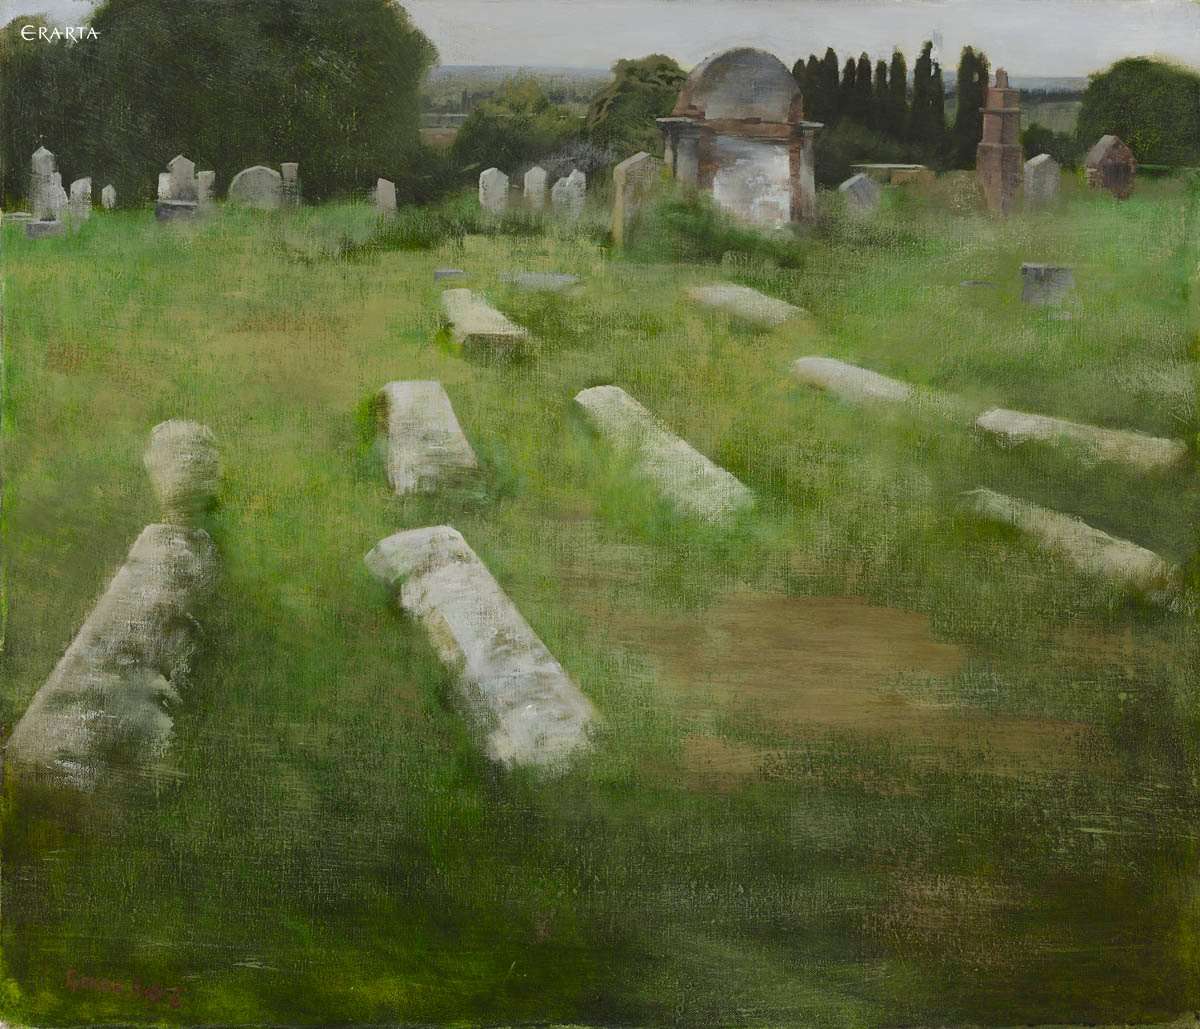 Еврейское кладбище, художник Александр Греков